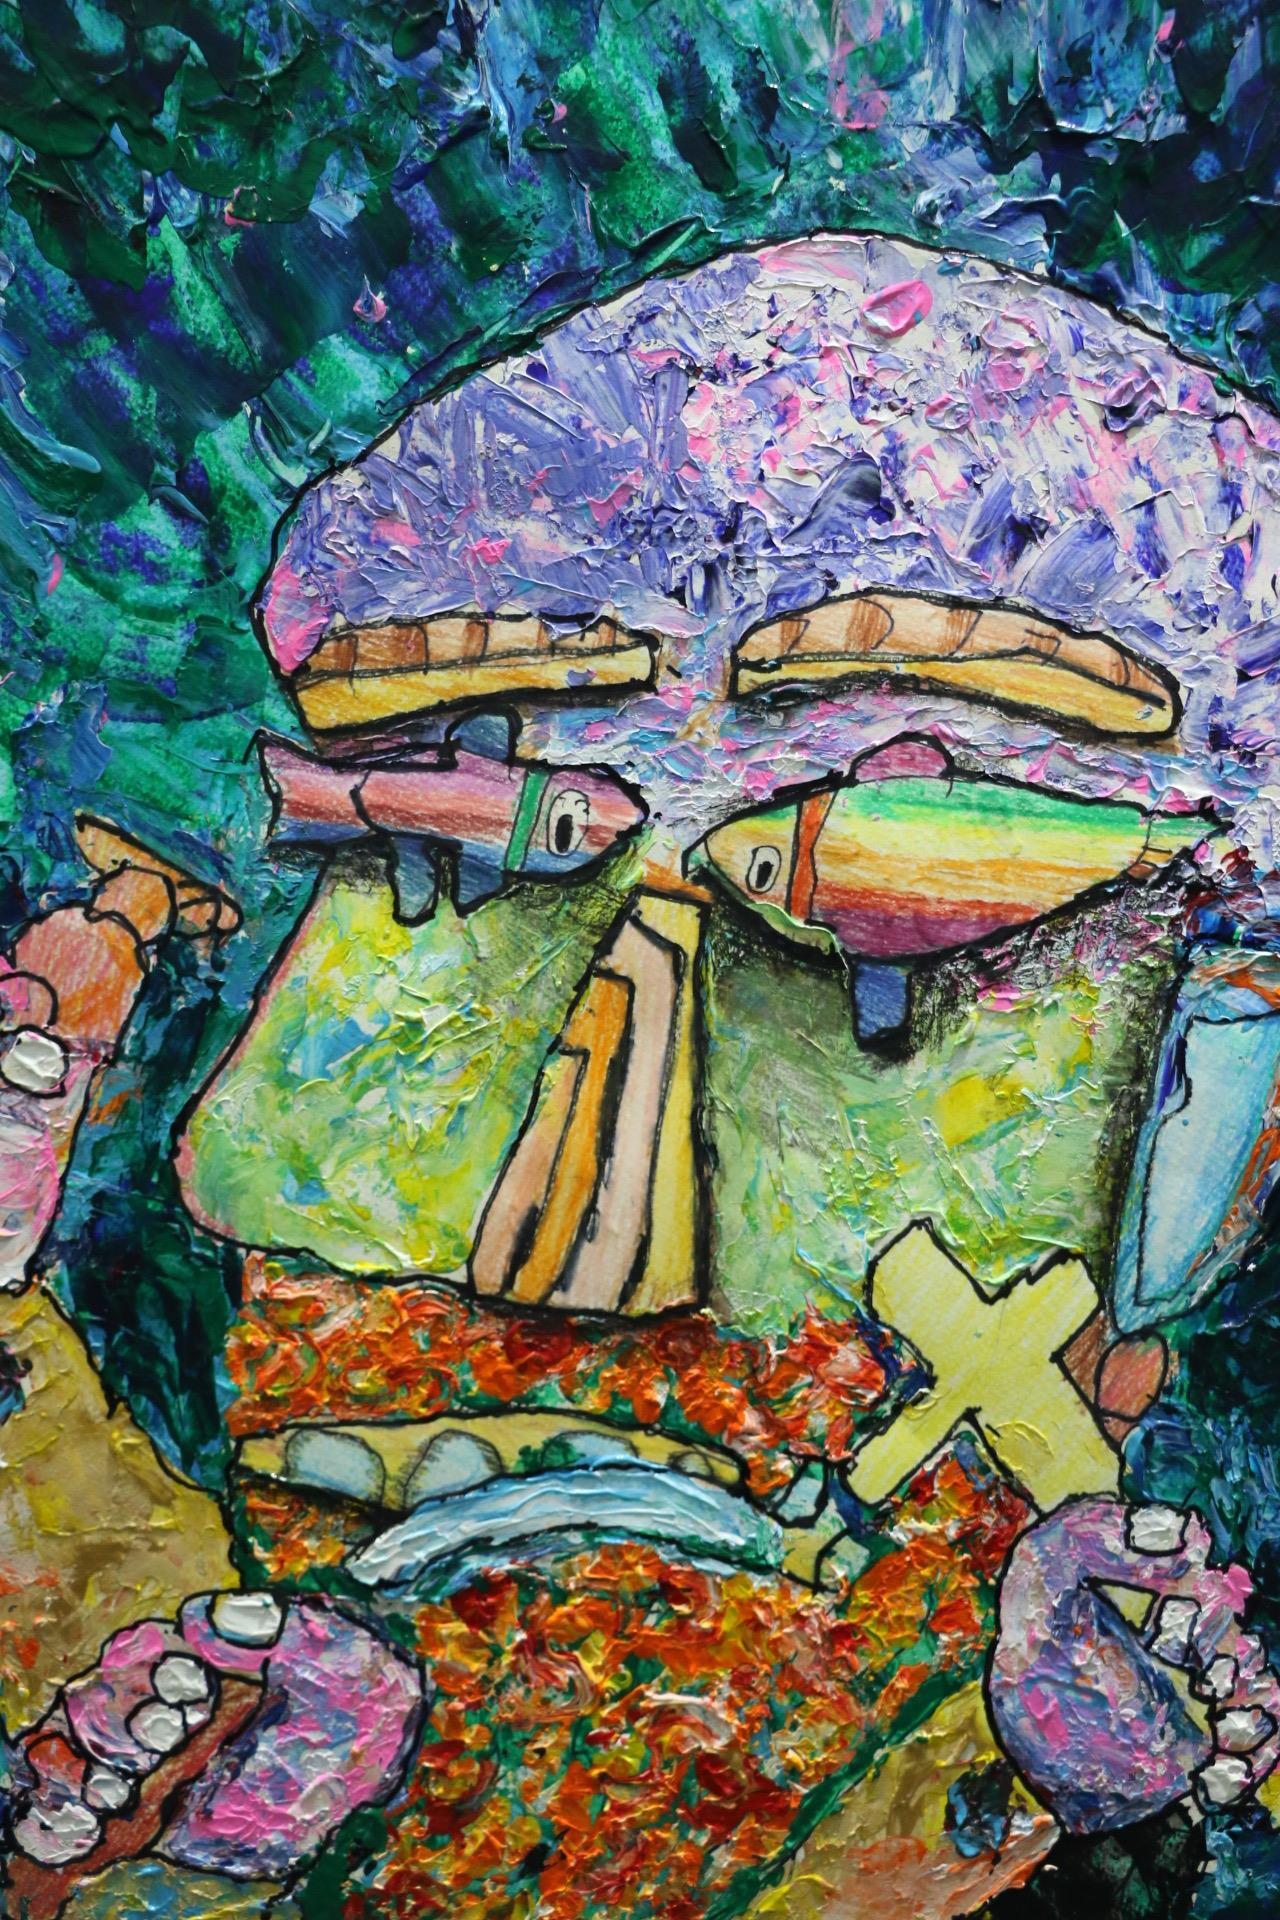 星儿将基督教五饼二鱼的故事融入马偕的脸谱，受到美国艺术界和侨界的青睐，受邀将到美国举办双洲巡回展。图／新北市社会局提供